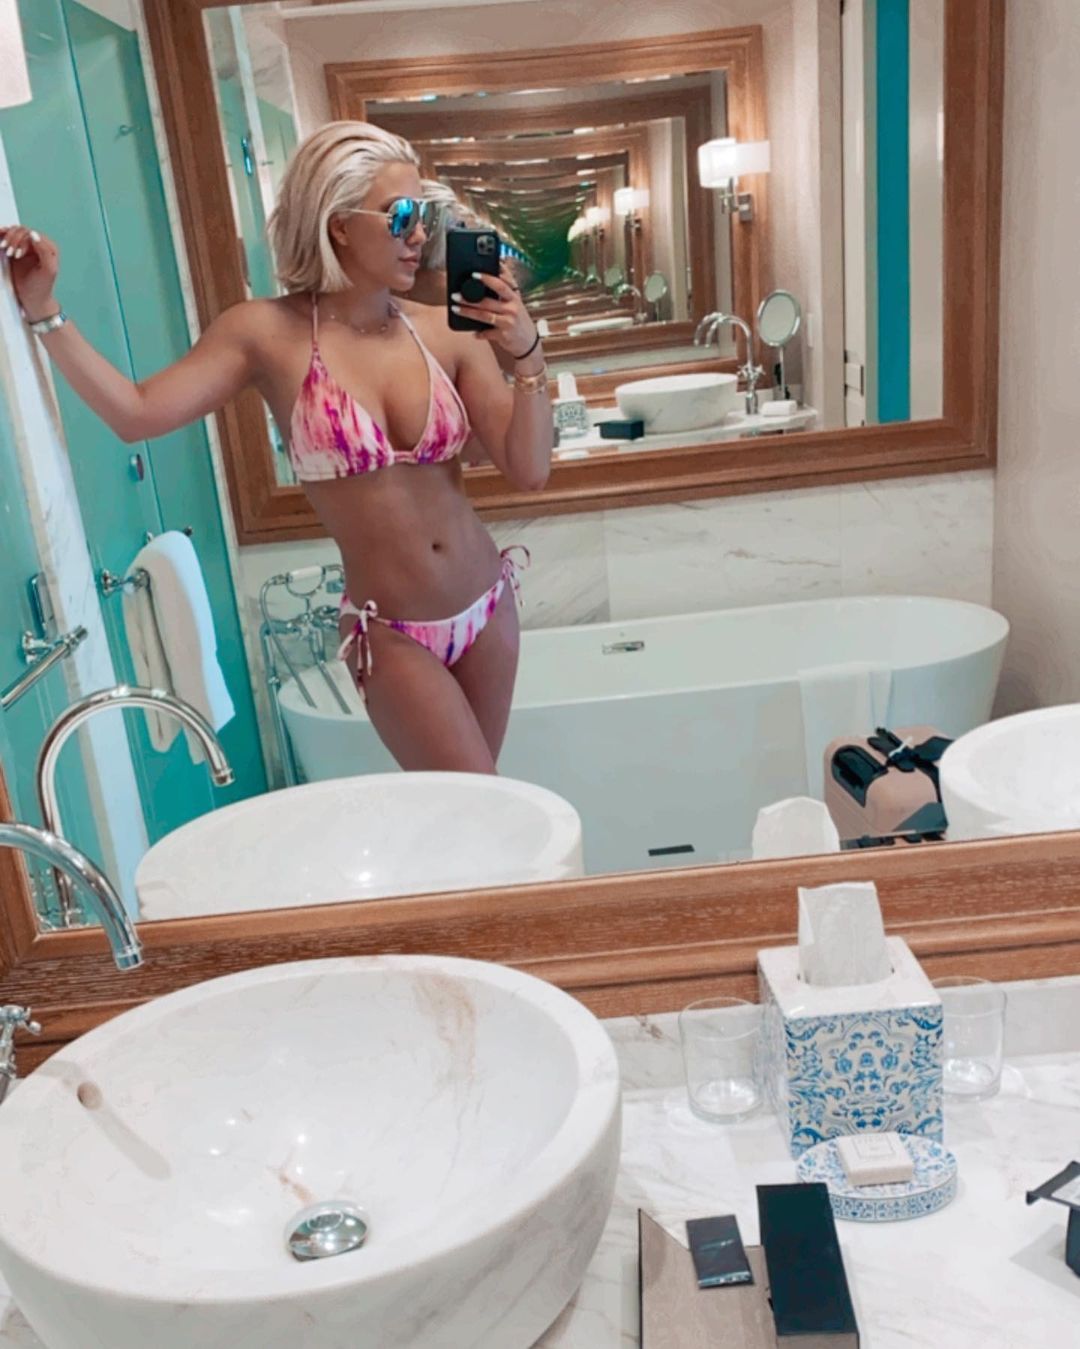 Savannah Chrisley bikini selfie.